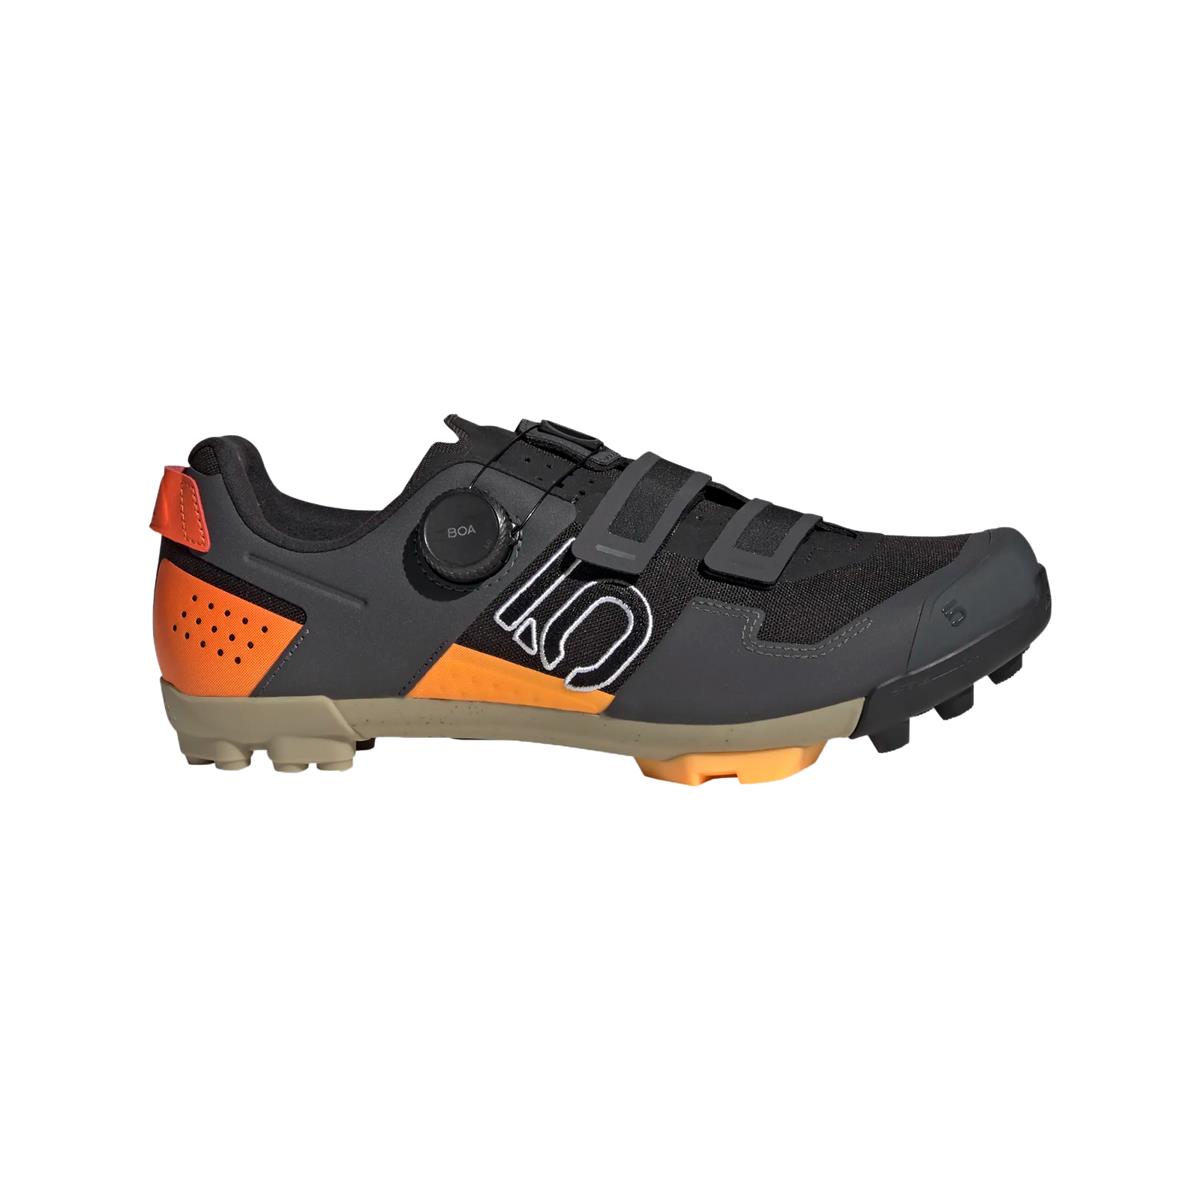 Clip 5.10 Kestrel Boa MTB Shoes Black/Orange Size 42